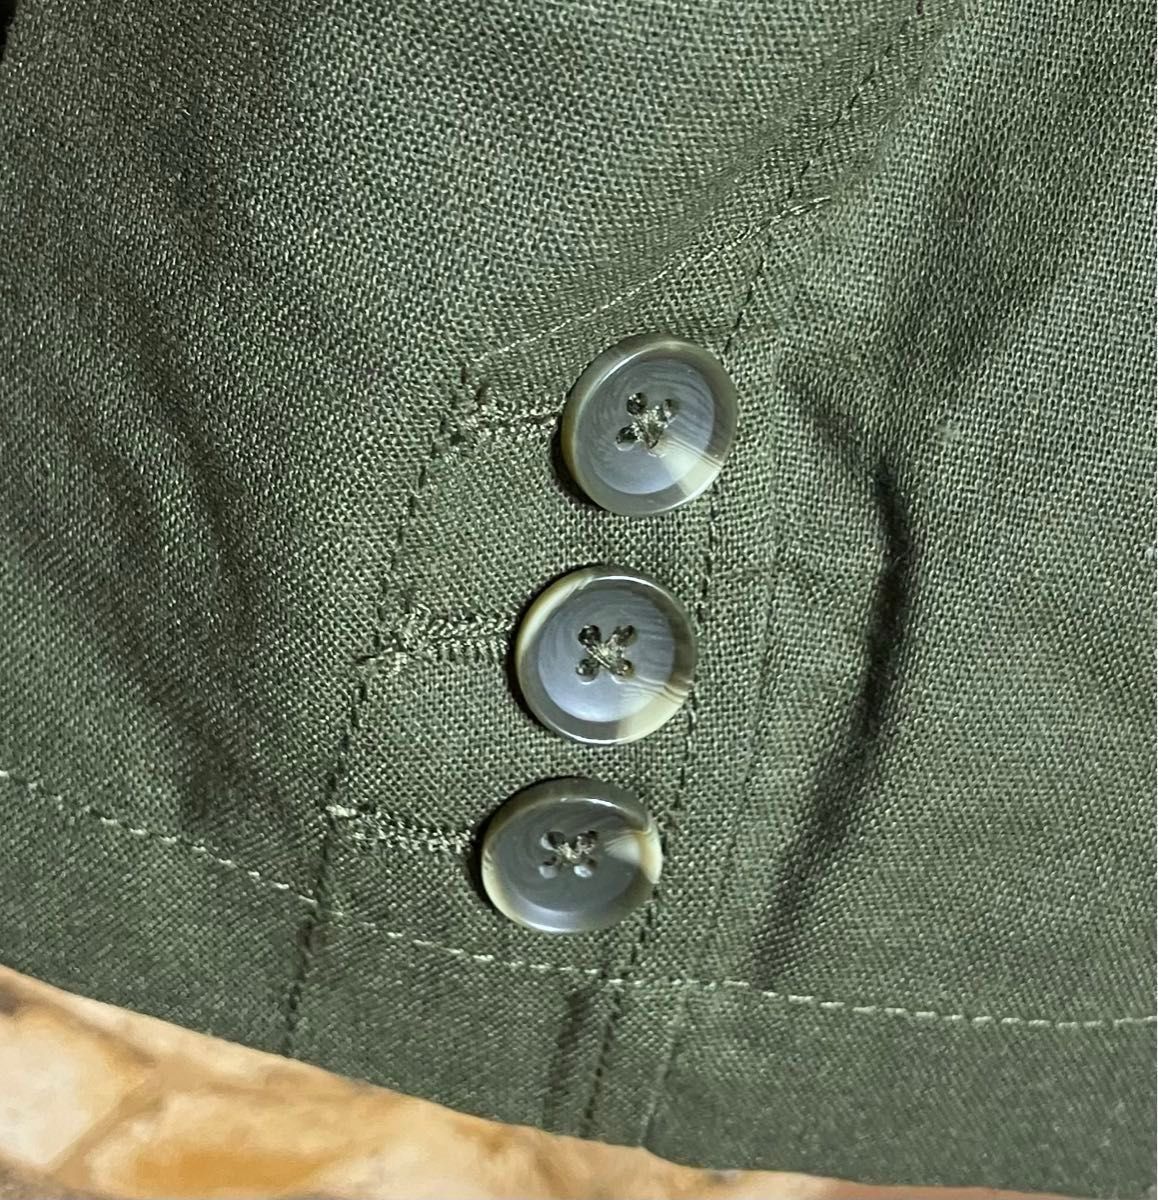 新品 JILL BLAZE 7分袖 麻混 ジャケット Lサイズ カーキ・グリーン系 メンズ  サマージャケット ジルブレイズ